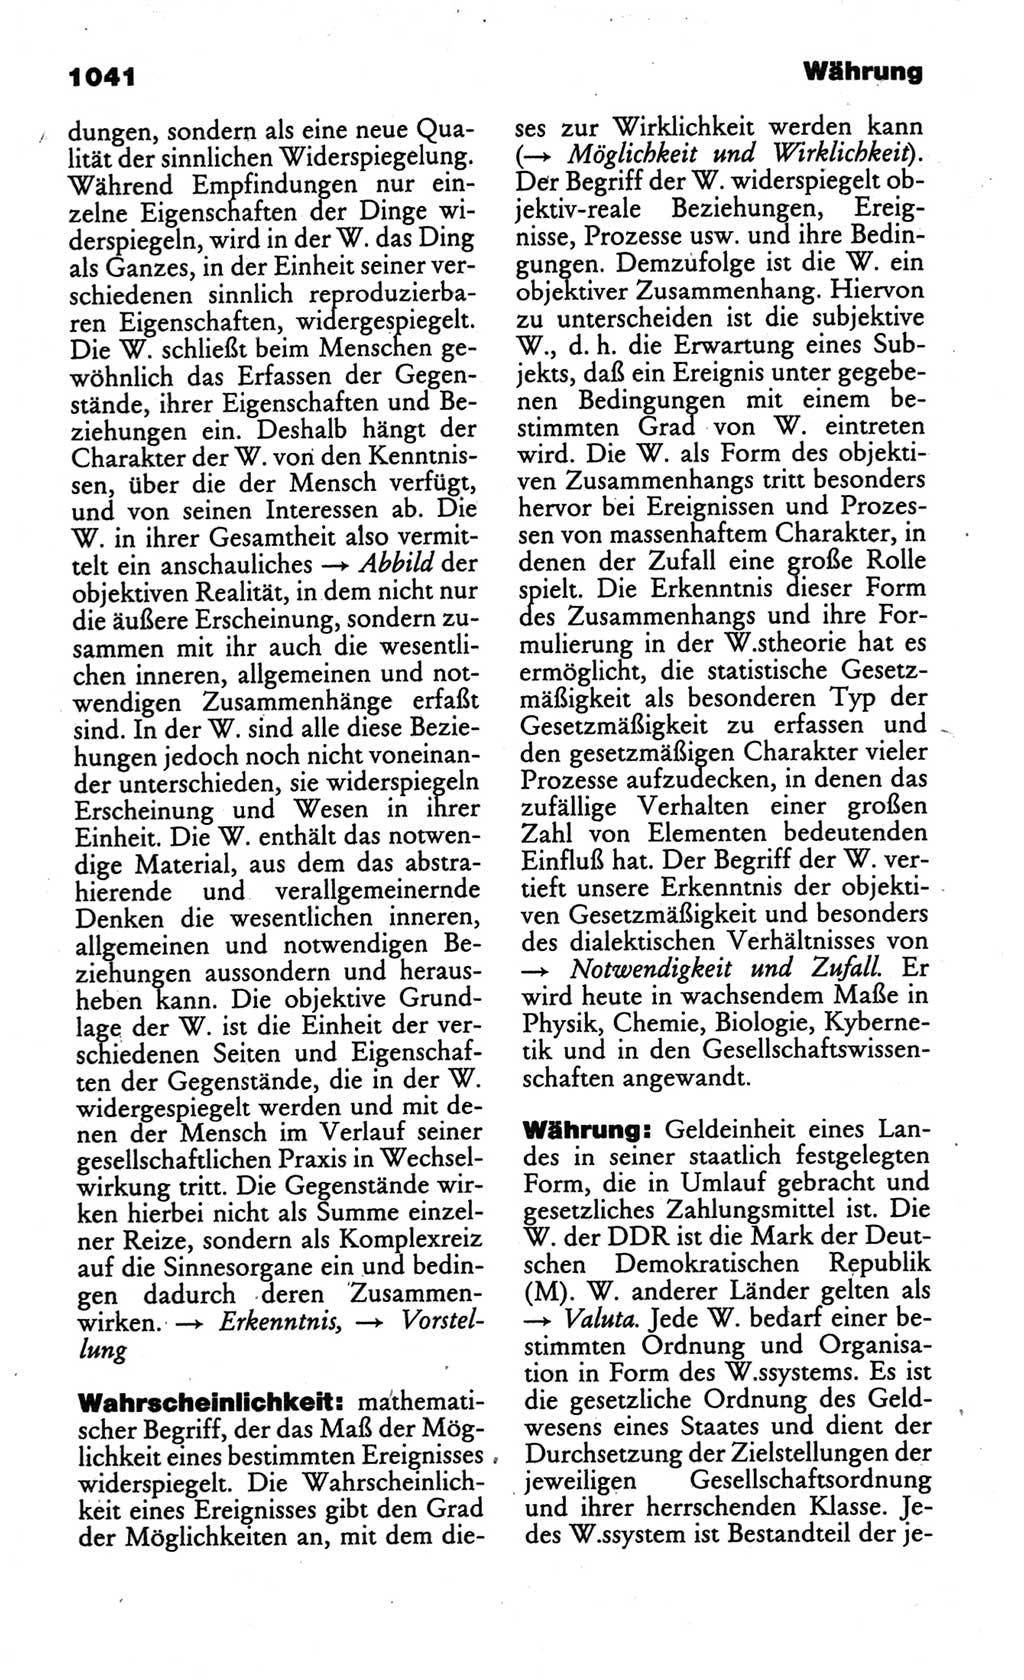 Kleines politisches Wörterbuch [Deutsche Demokratische Republik (DDR)] 1986, Seite 1041 (Kl. pol. Wb. DDR 1986, S. 1041)